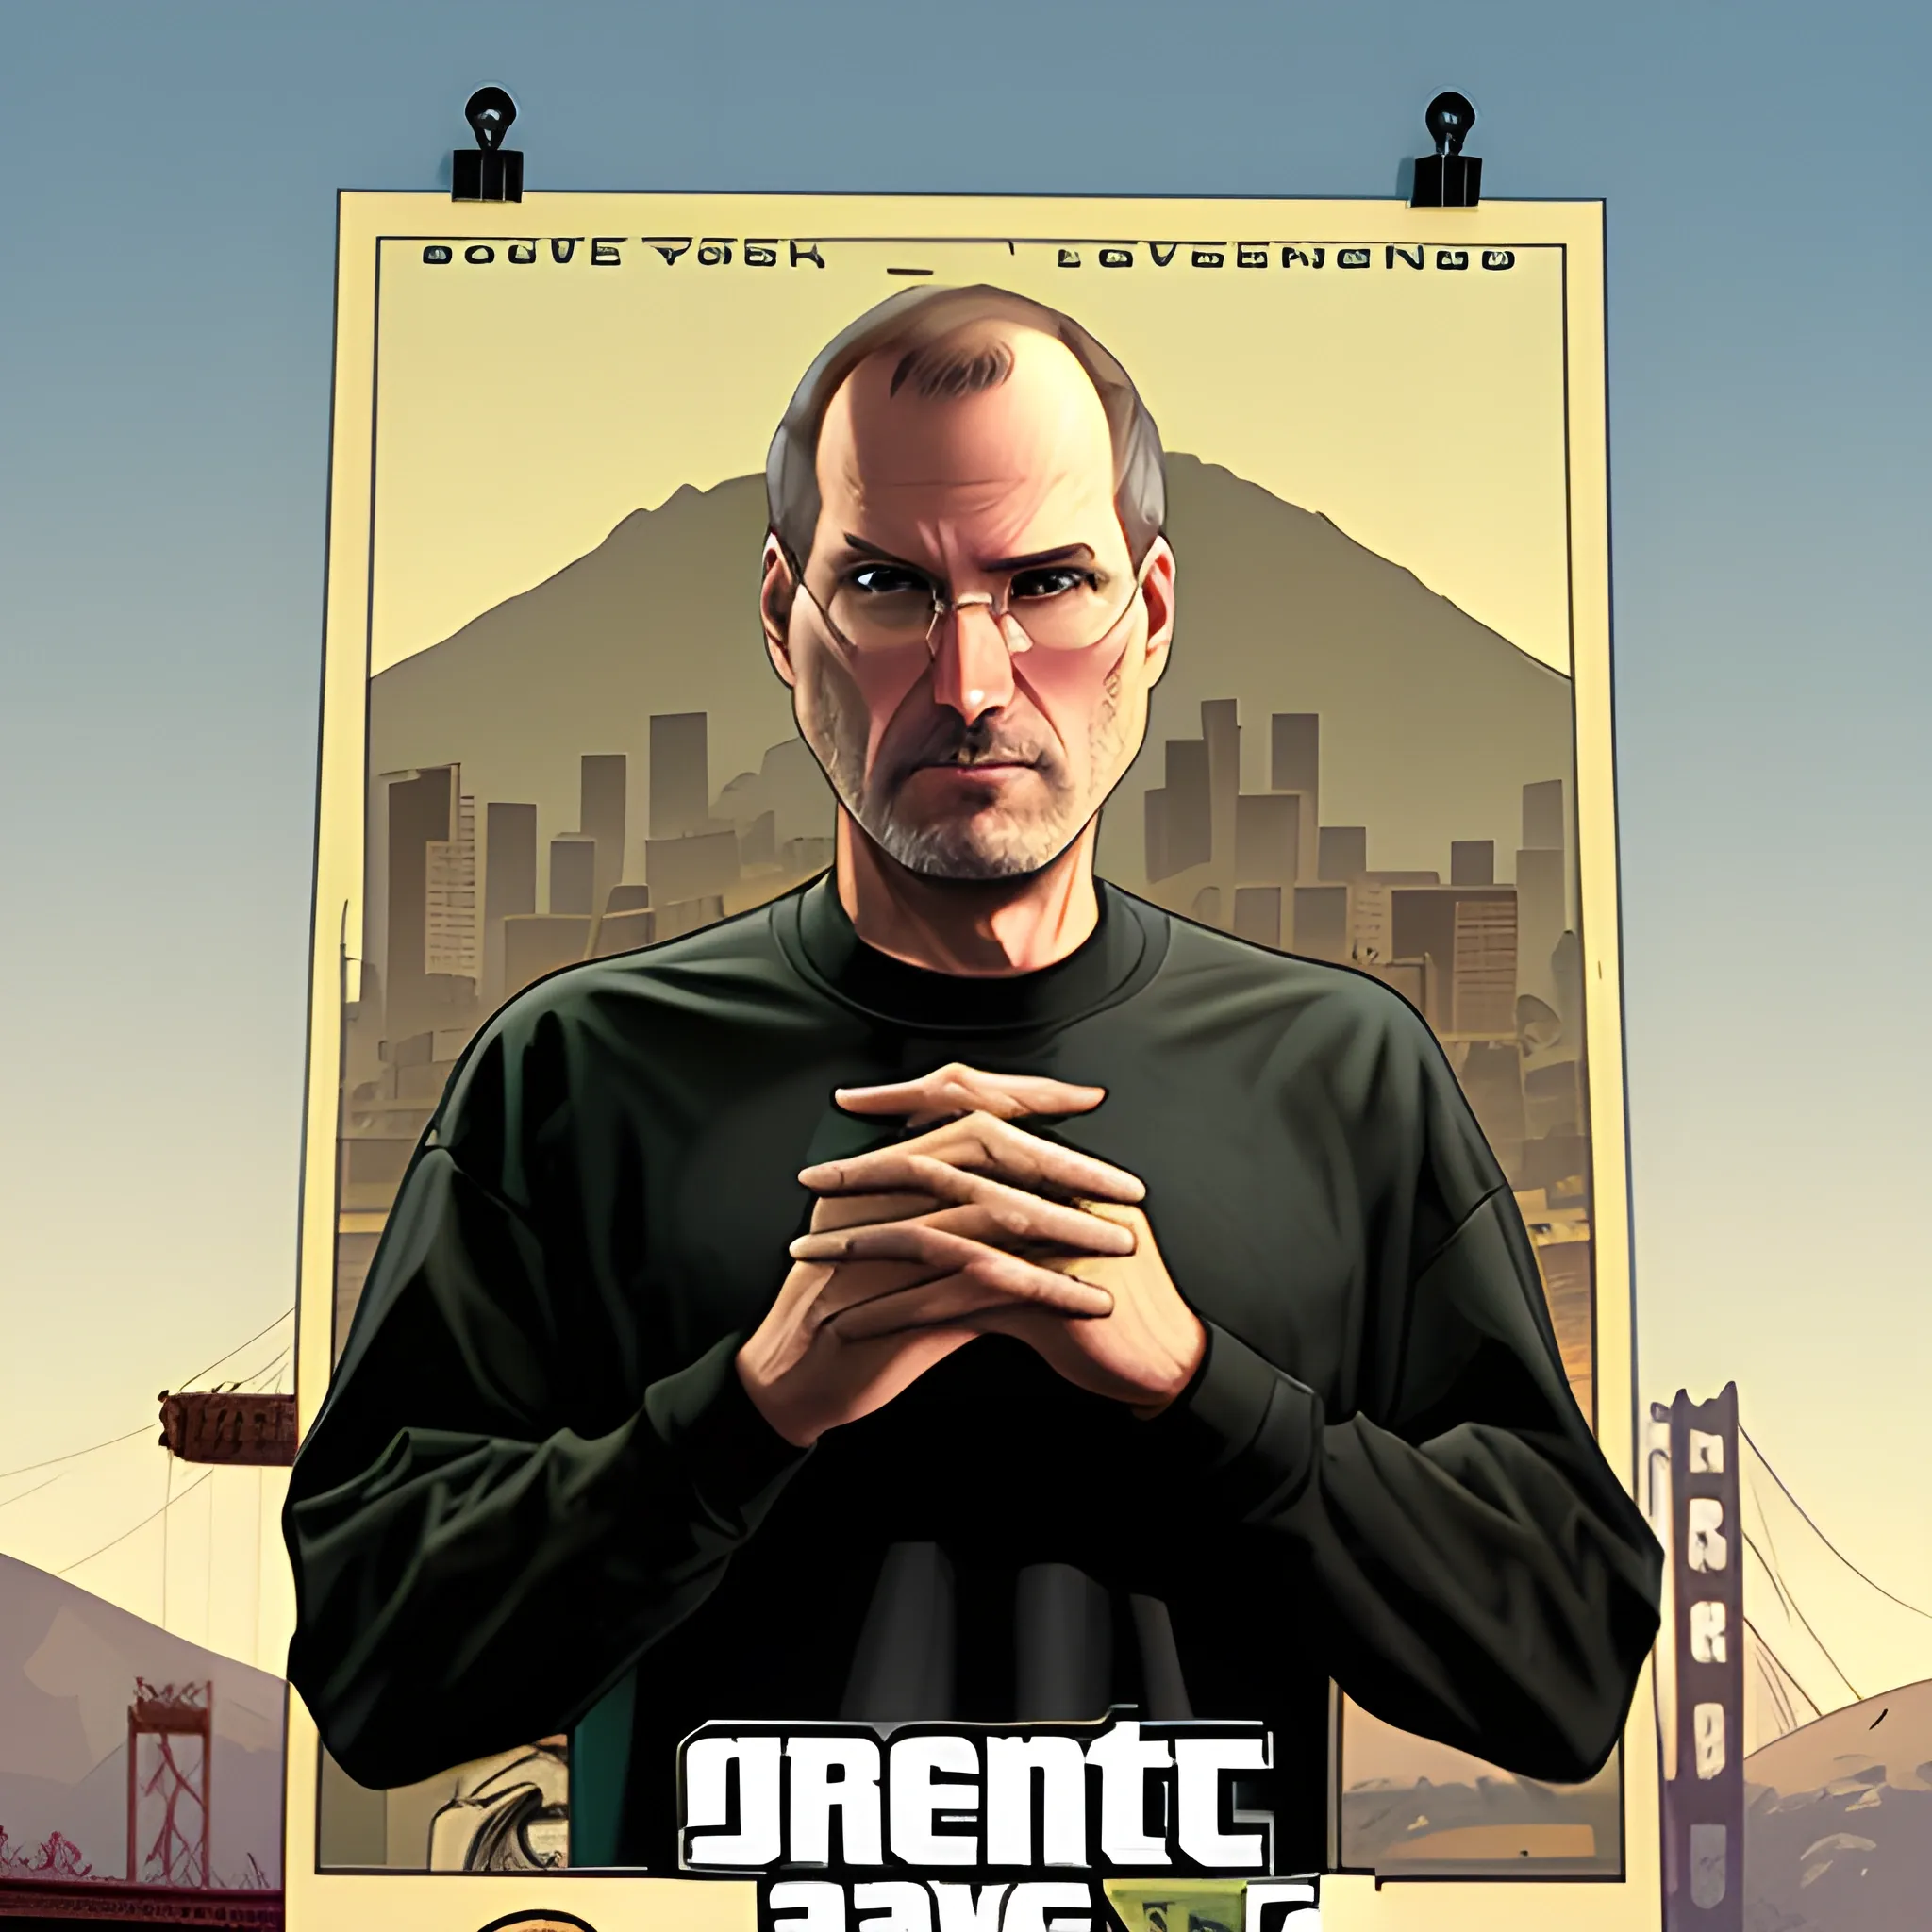 Grand Theft Auto Poster - NerdKungFu